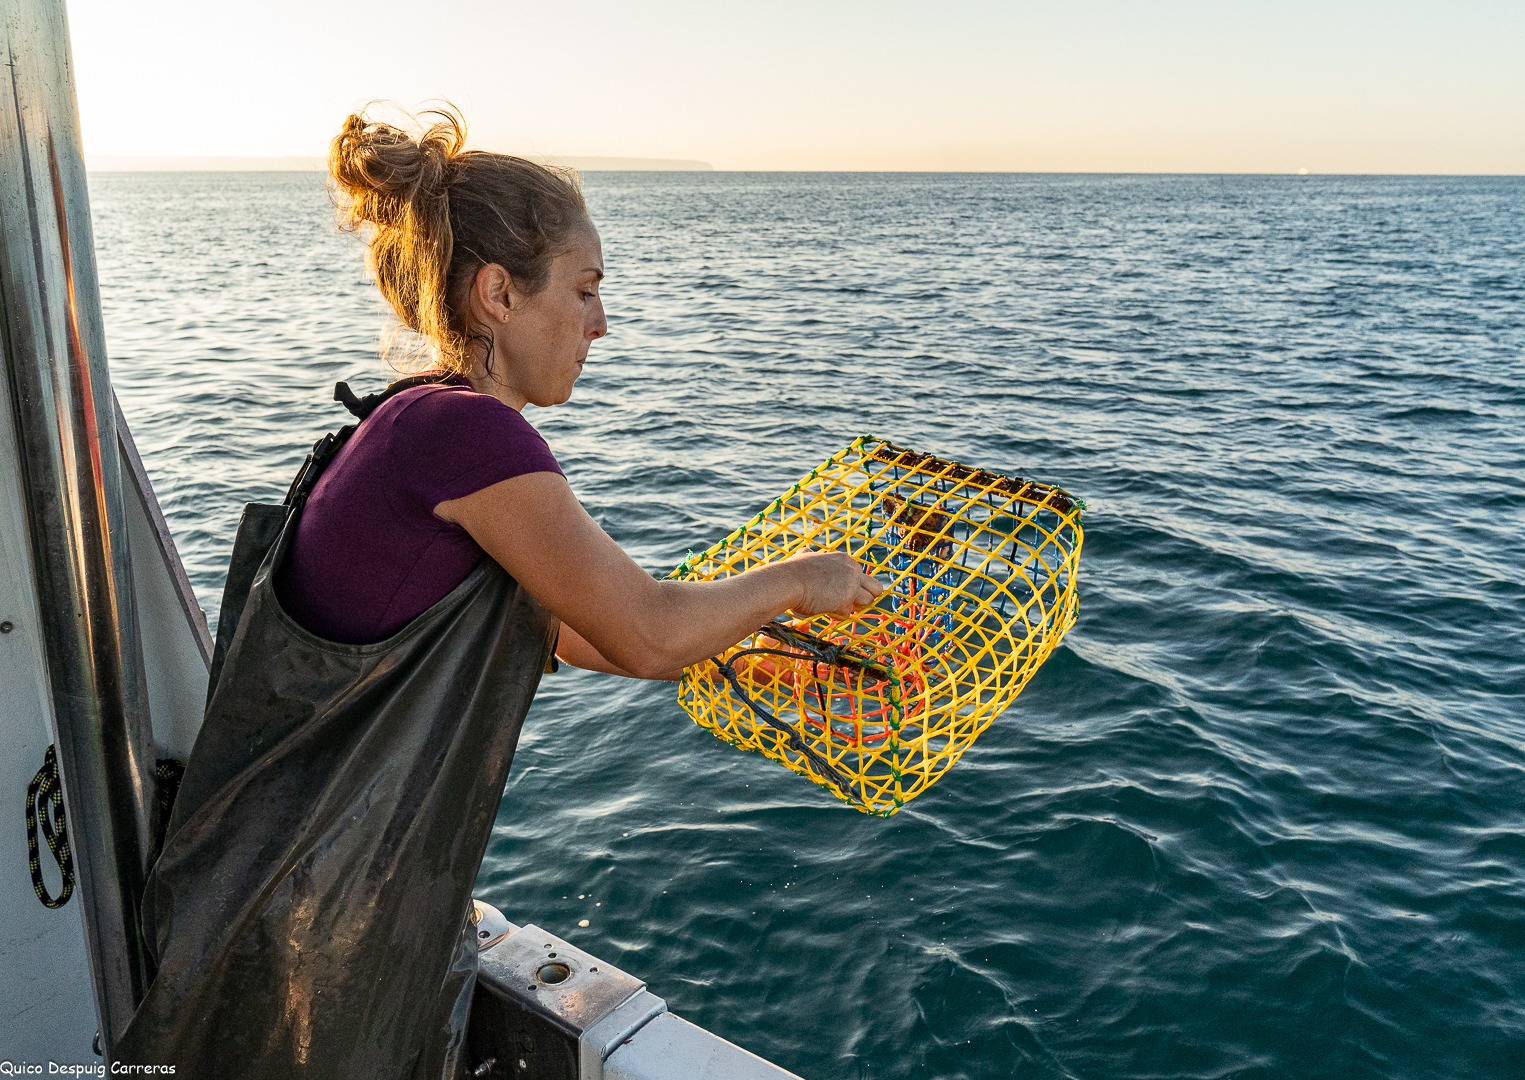 "La ciencia y la pesca pueden trabajar juntas para gestionar los recursos de manera sostenible"